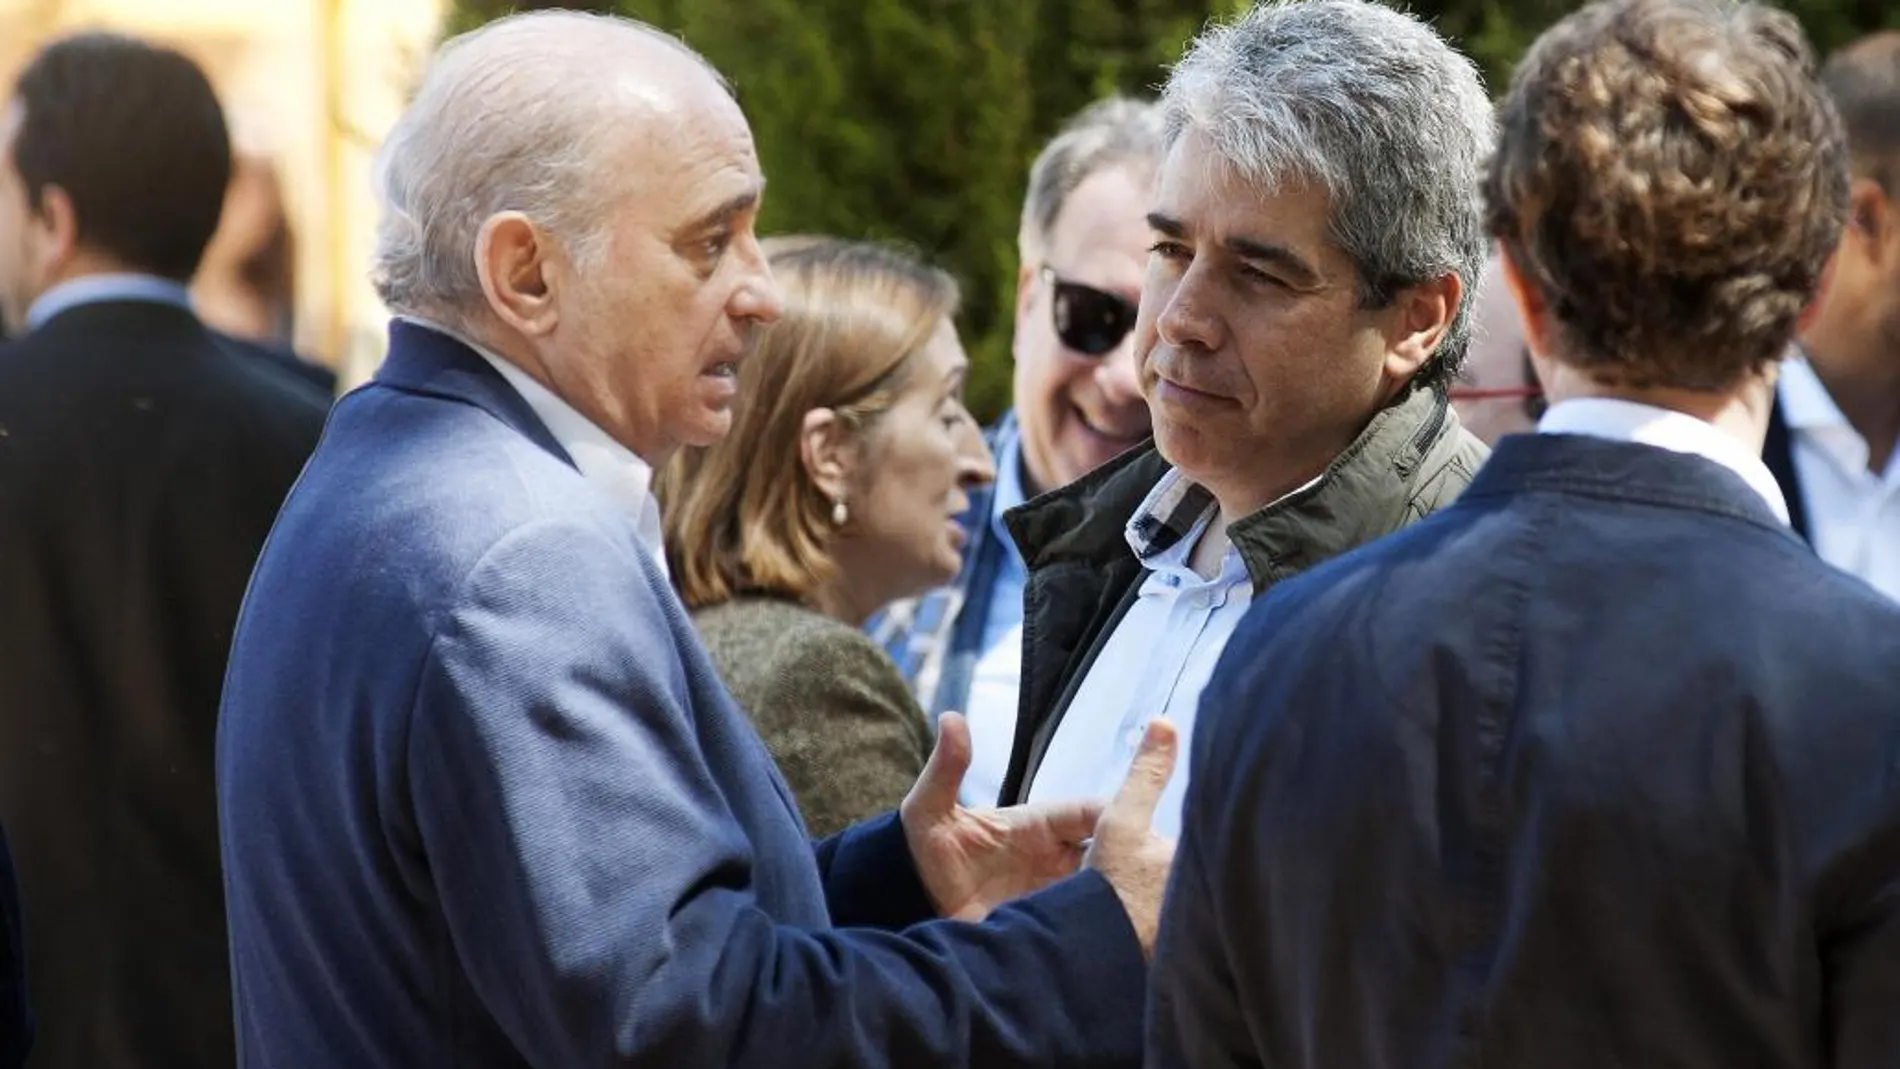 El ministro de Interior, Jorge Fernández Díaz (i), conversa con el portavoz de Democracia i Llibertat en el Congreso, Francesc Homs